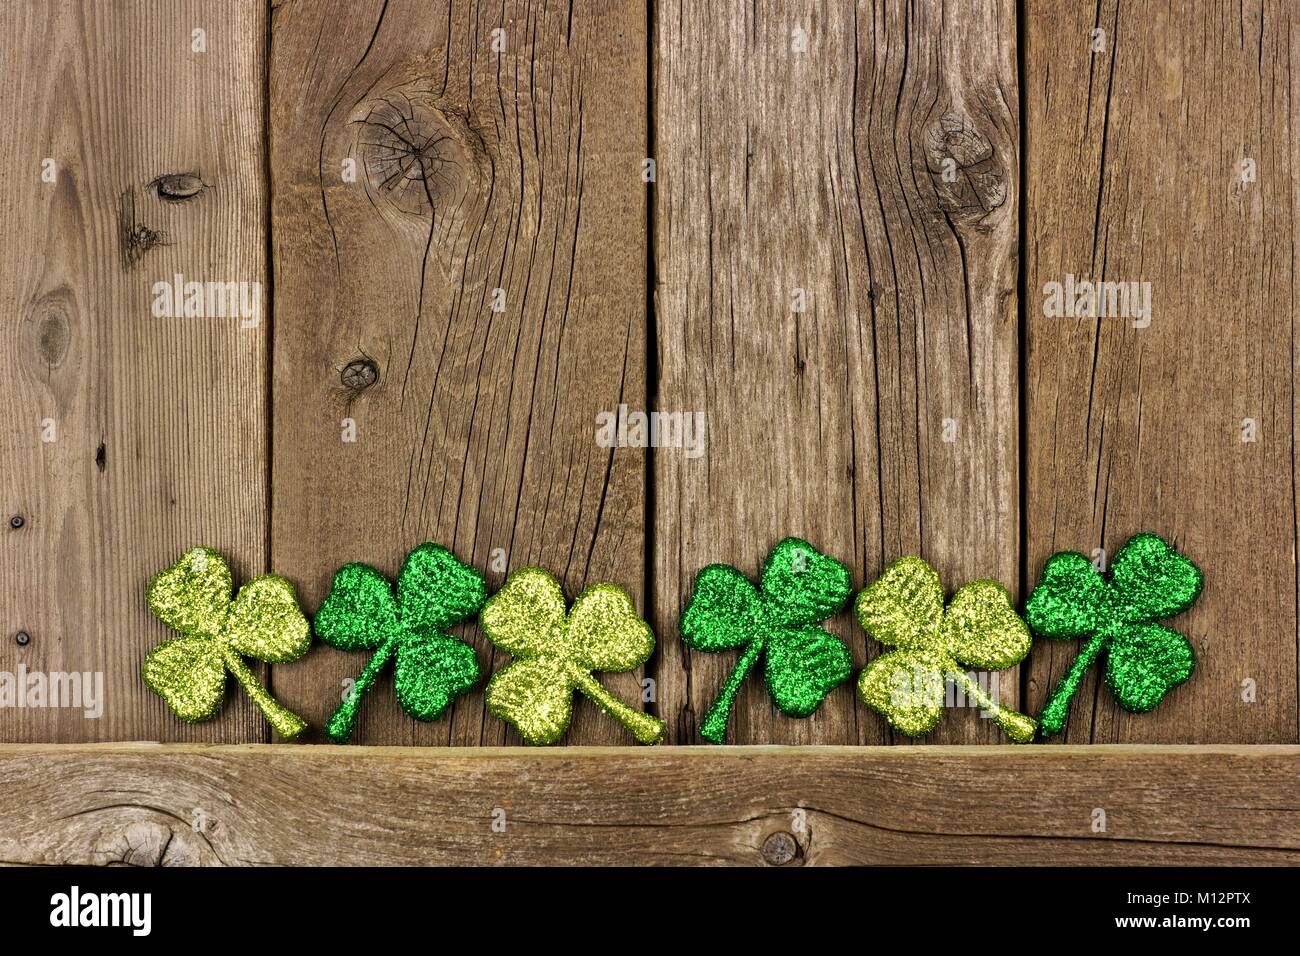 Reihe von St Patricks Day shamrocks gegen eine alte Holz- Hintergrund. Untere Grenze zu kopieren. Stockfoto